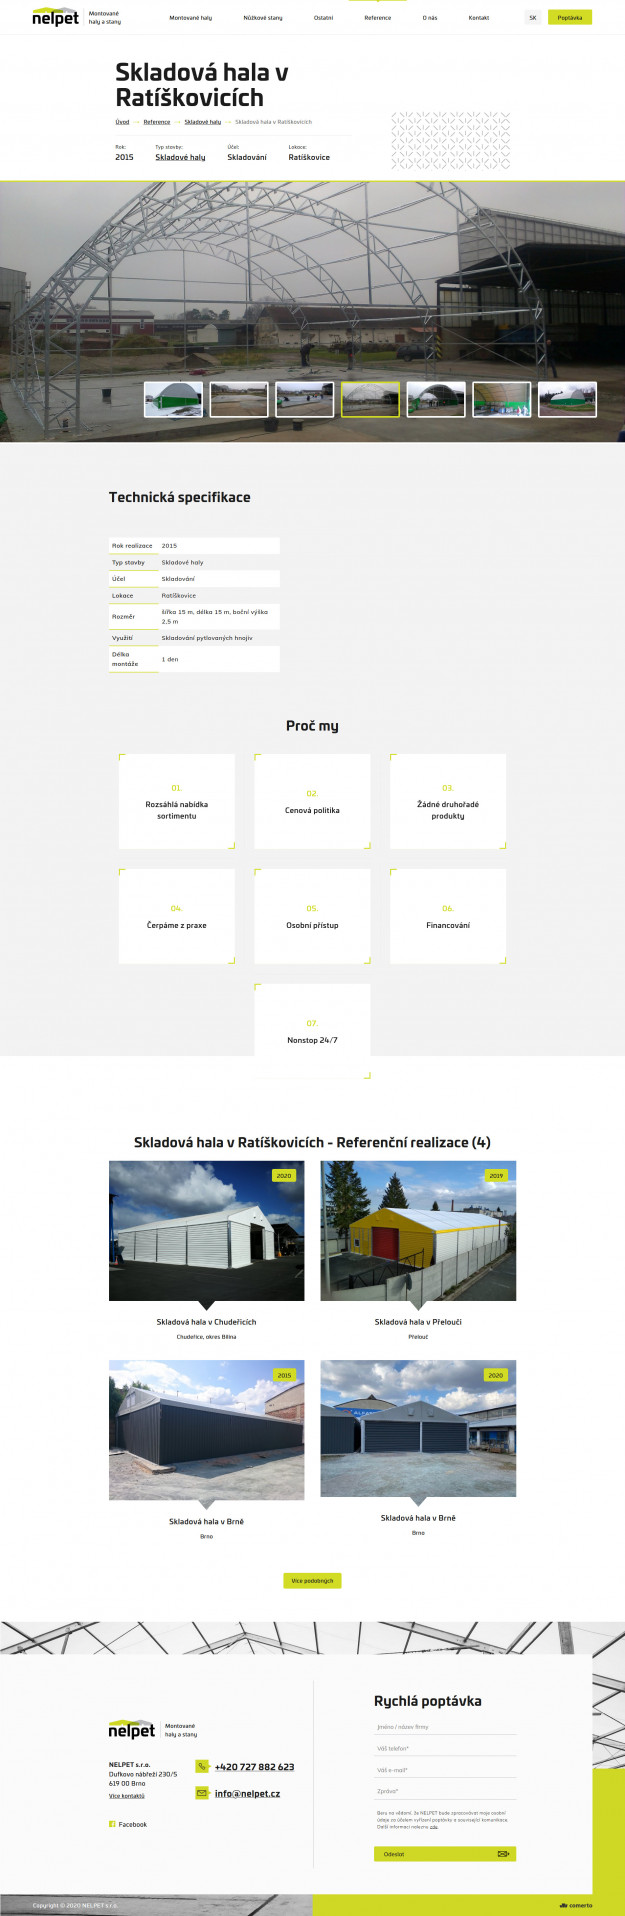 Tvorba nového webu Nelpet - Screenshot